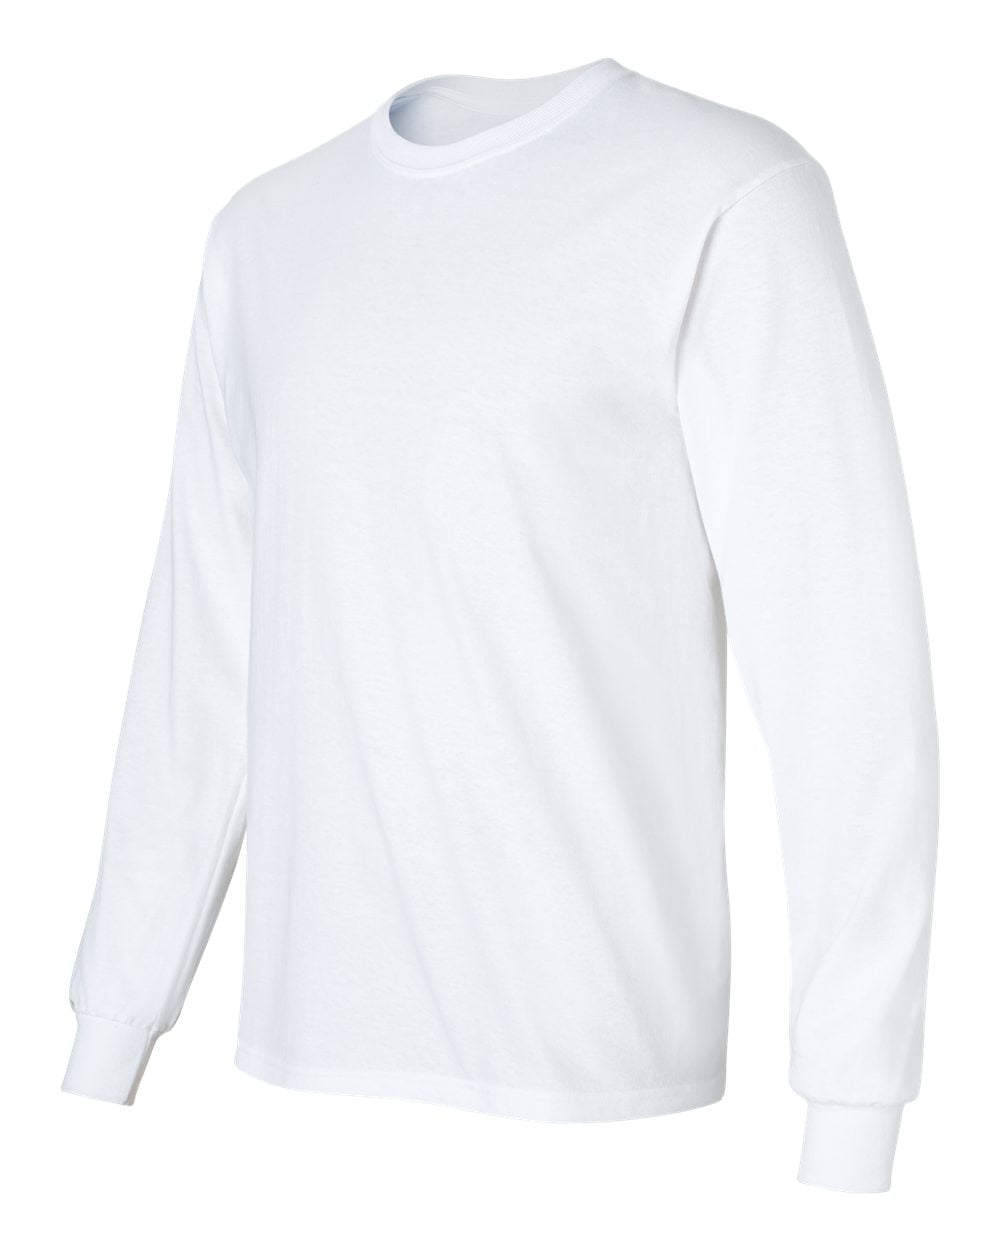 Ultra Cotton Long Sleeve T-Shirt - 2400 - Walmart.com